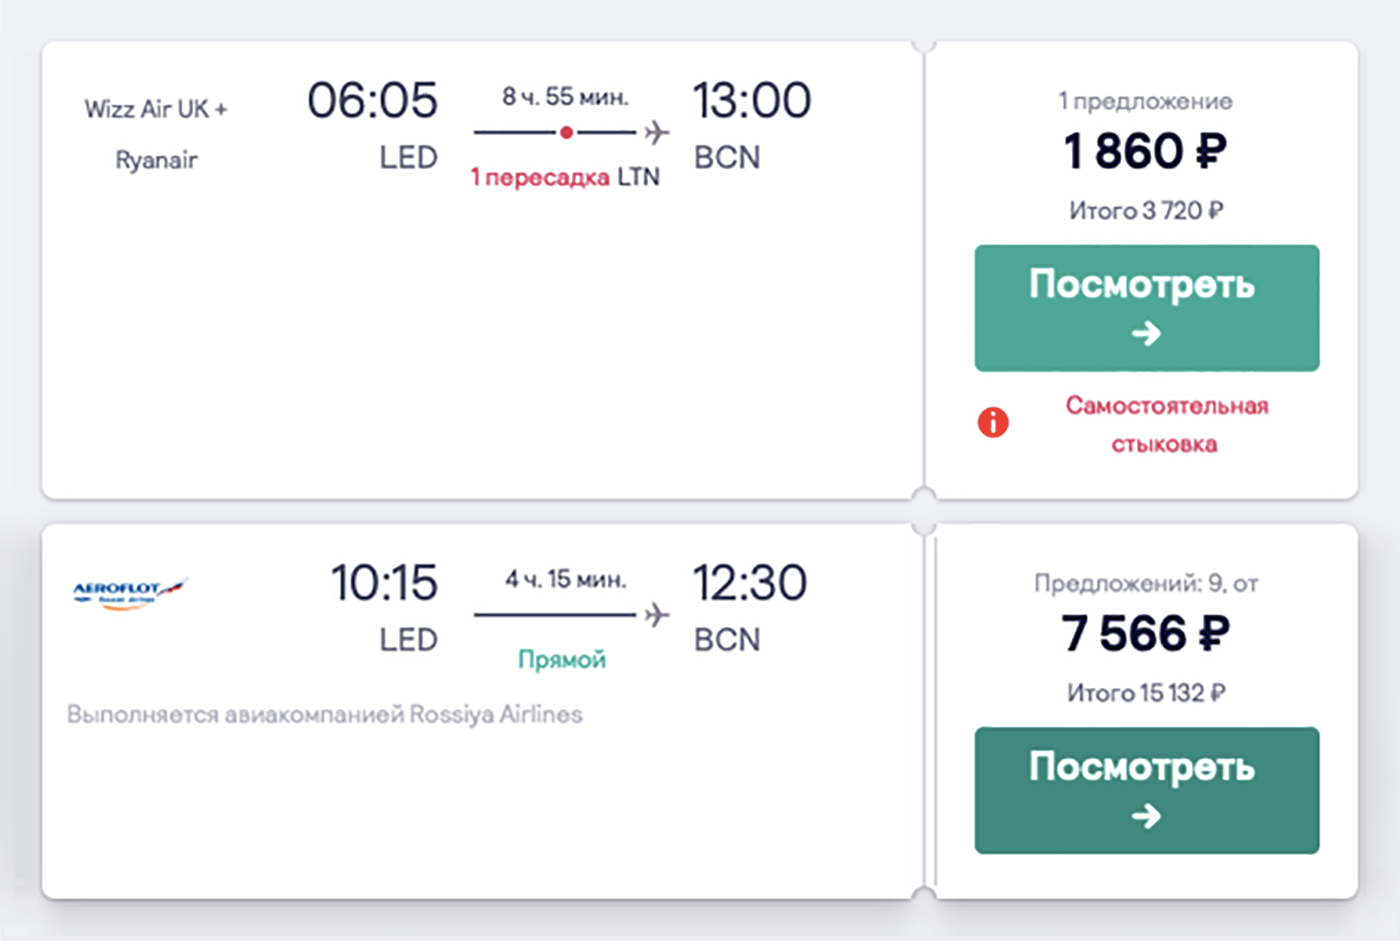 Недавно Wizz Air начал летать в Петербург. Он предлагал билеты в Барселону за 3720 ₽ в обе стороны с пересадкой в Лондоне. Перелет «Аэрофлотом» обойдется в 15 132 ₽ в обе стороны